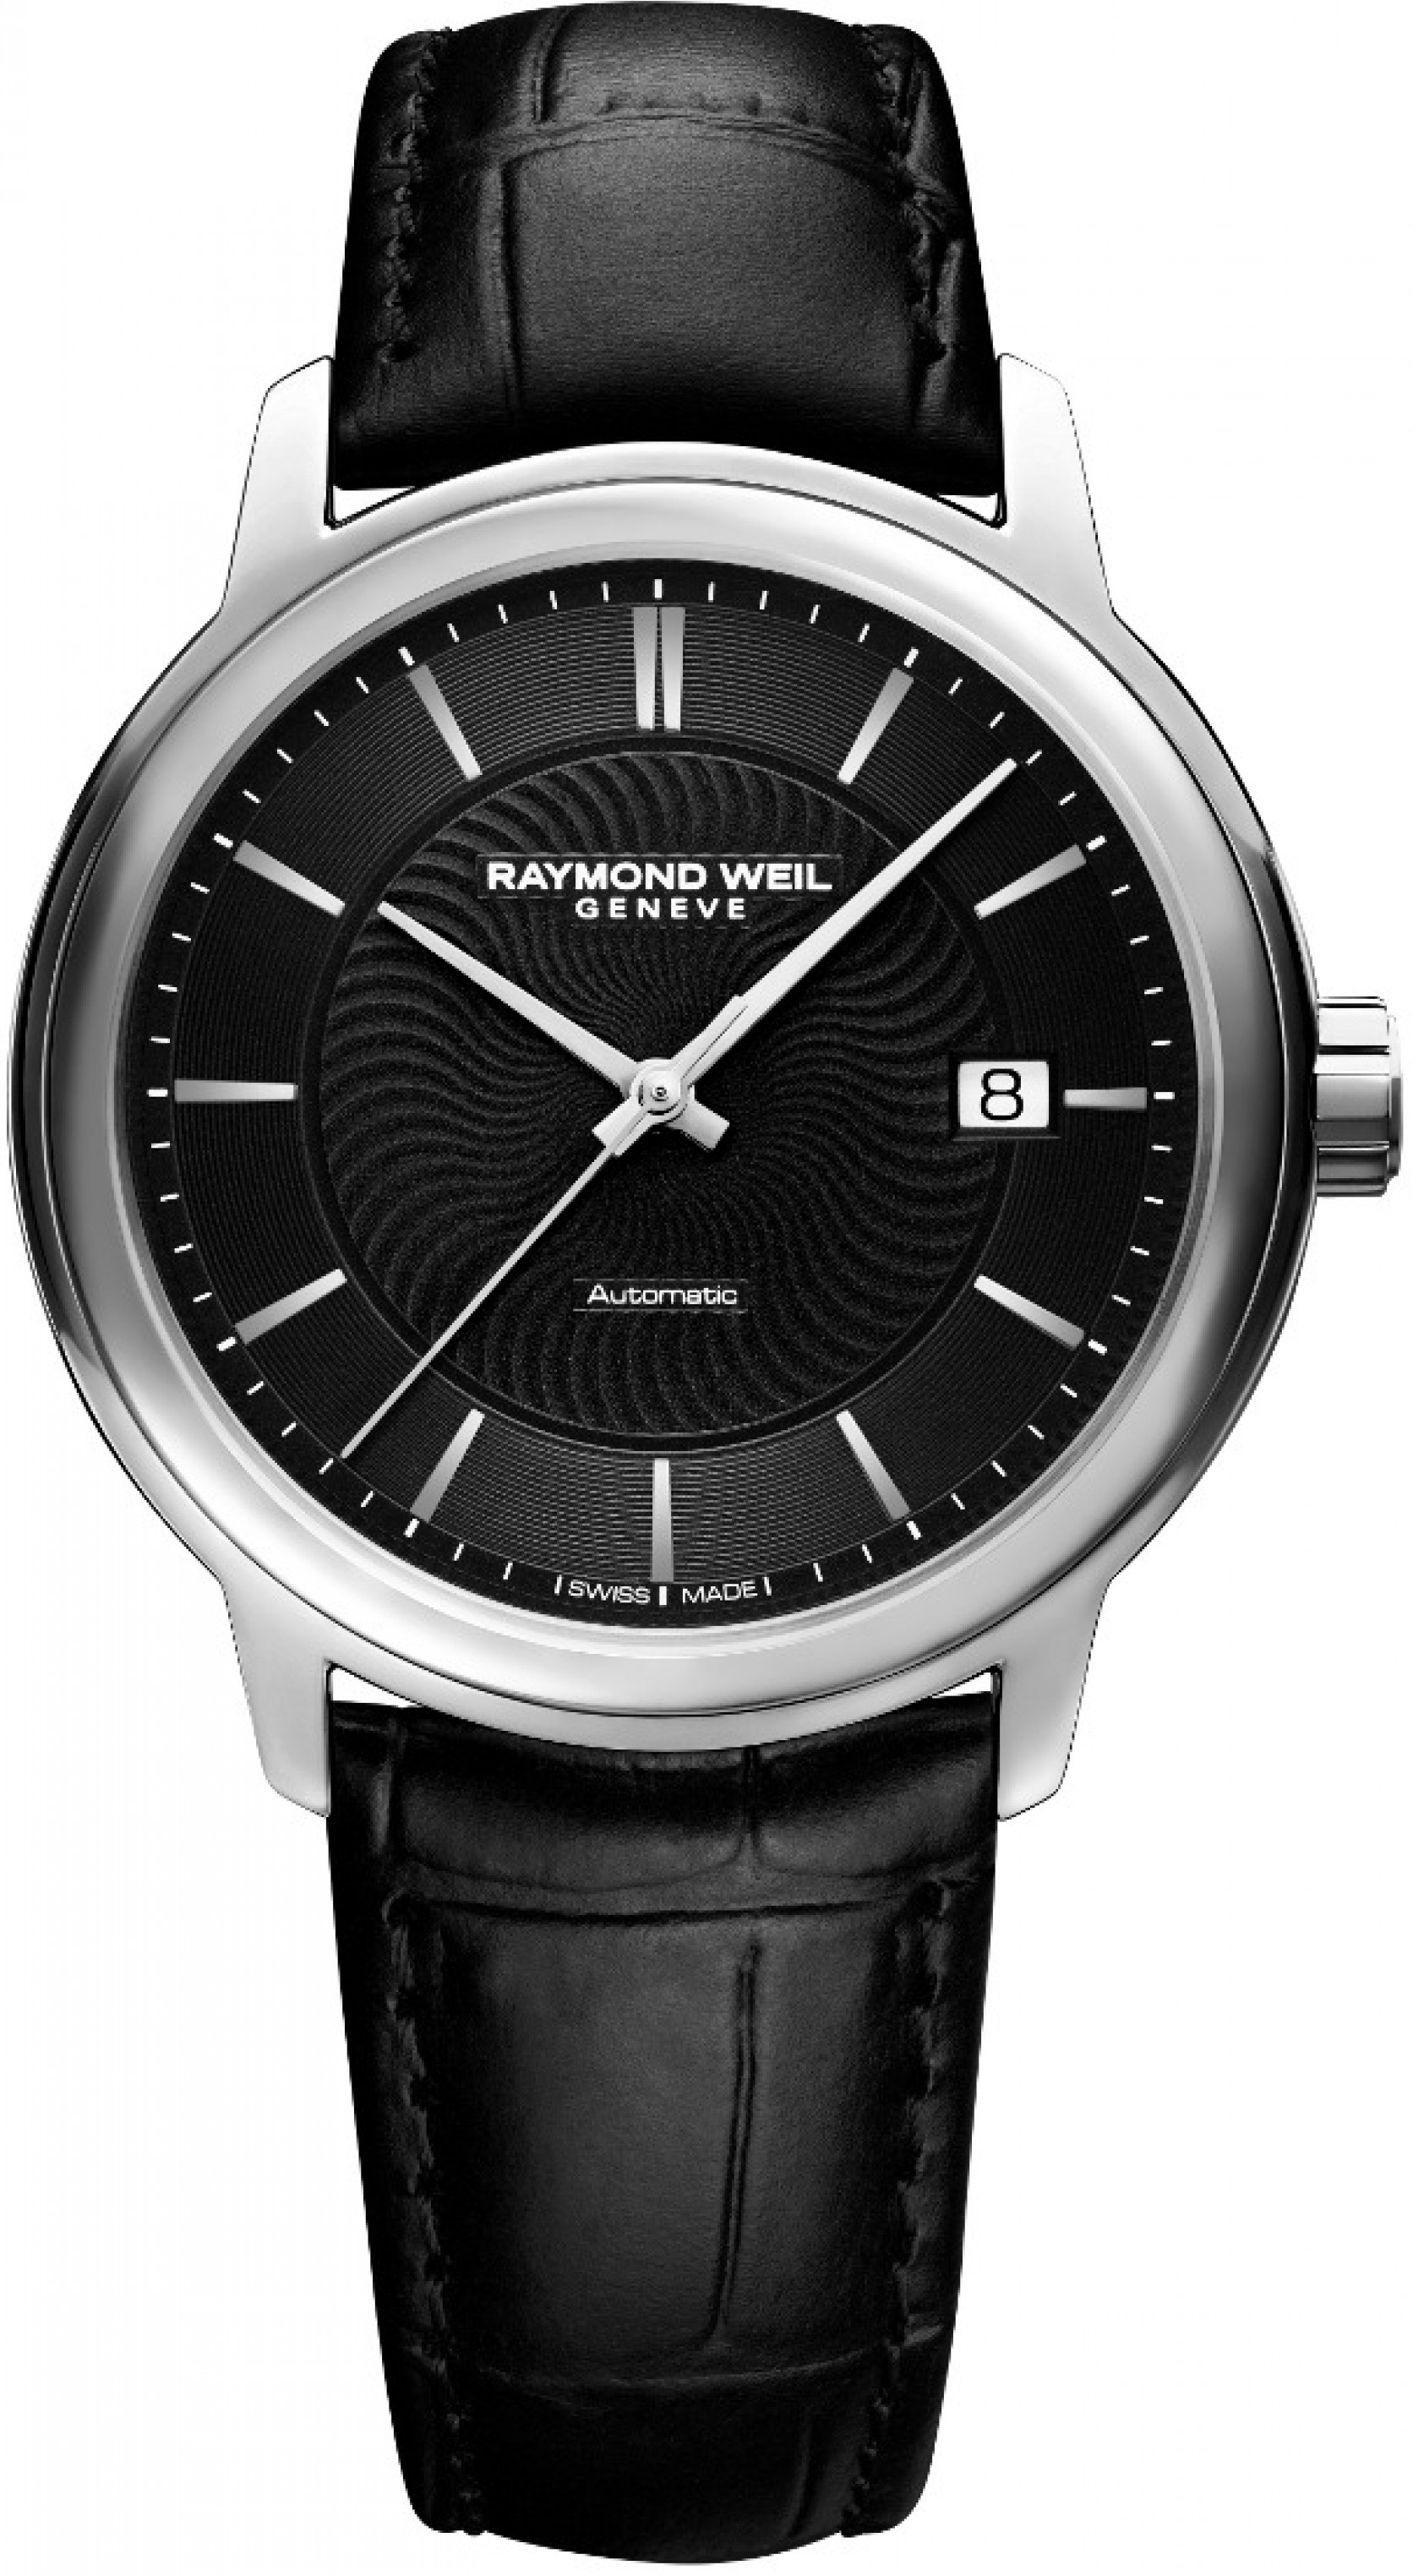 Часы наручные гарантия. Raymond Weil 5588-STC-20001. Швейцарские часы Raymond Weil. Часы Atlantic 69750.41.61. Raymond Weil Maestro - 2237stc05658.